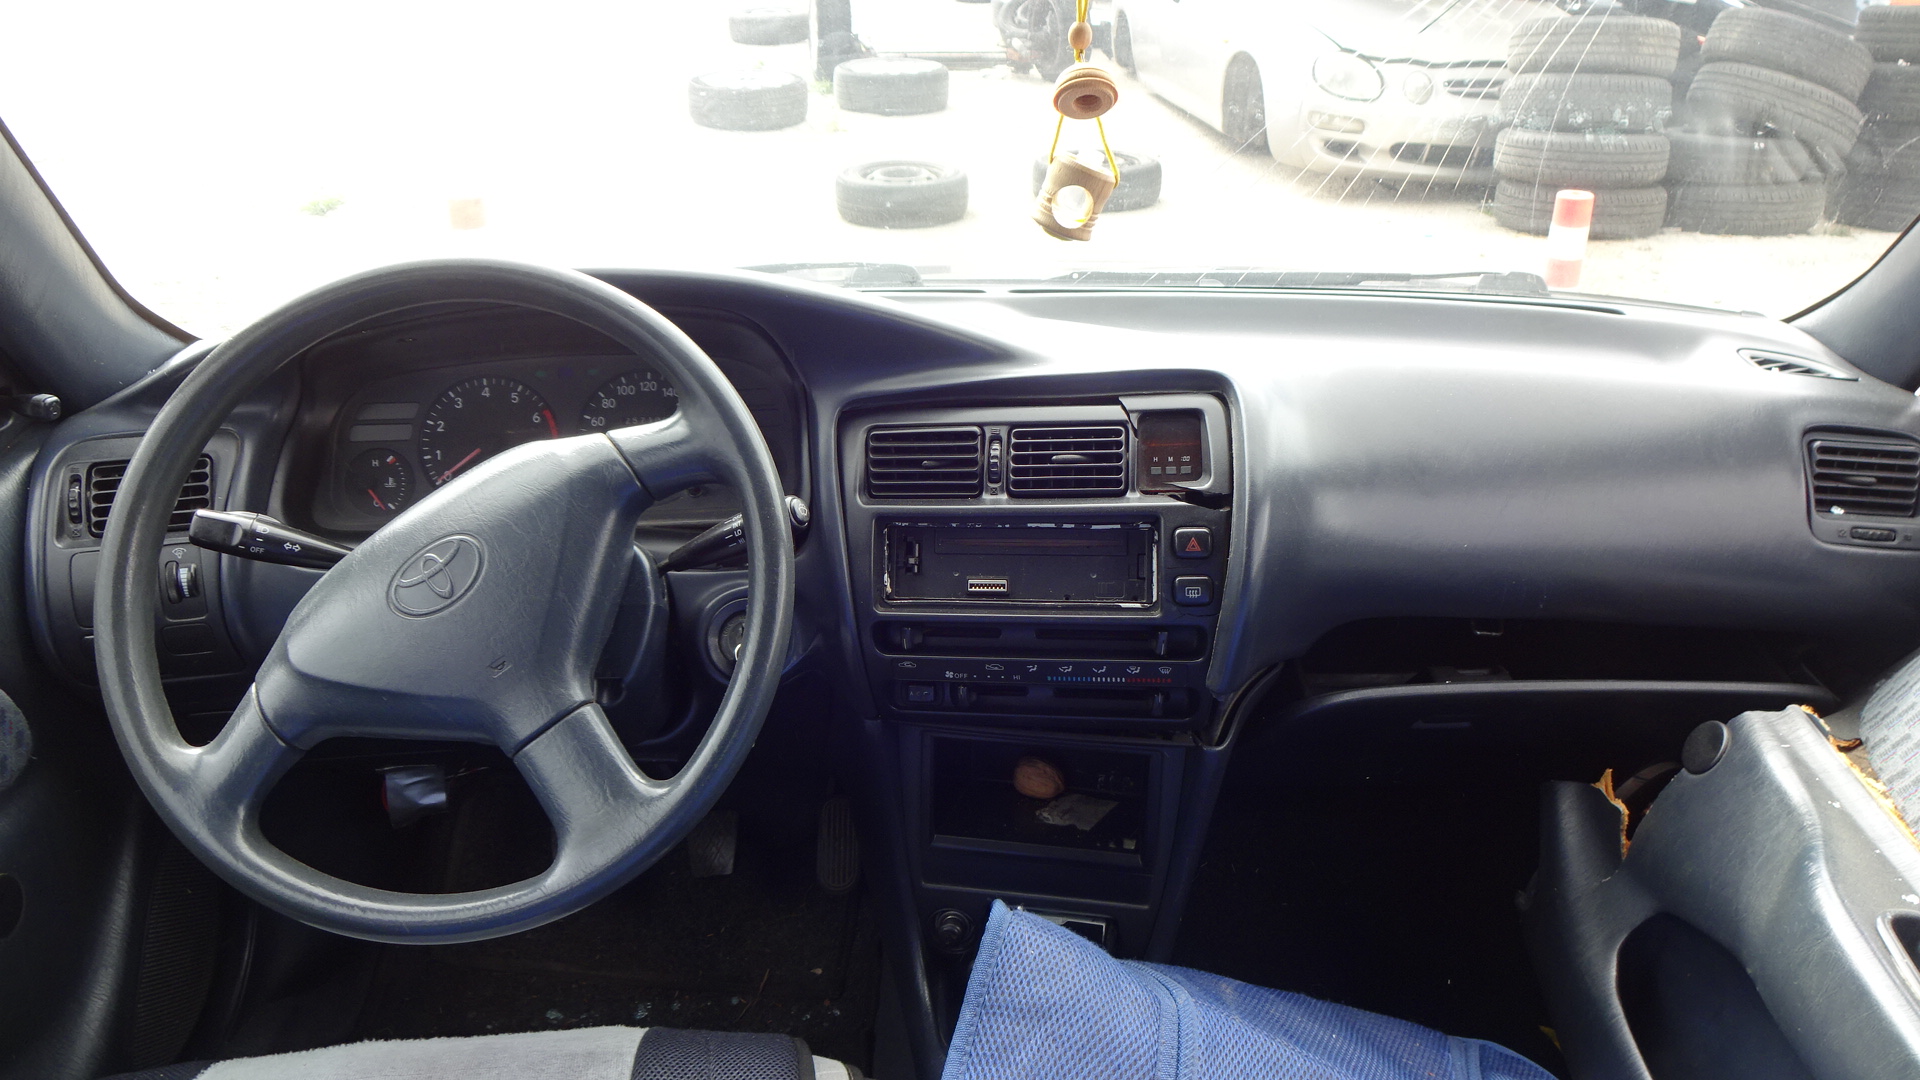 Πλαϊνή Πάντα Toyota Corolla ’97 Προσφορά.